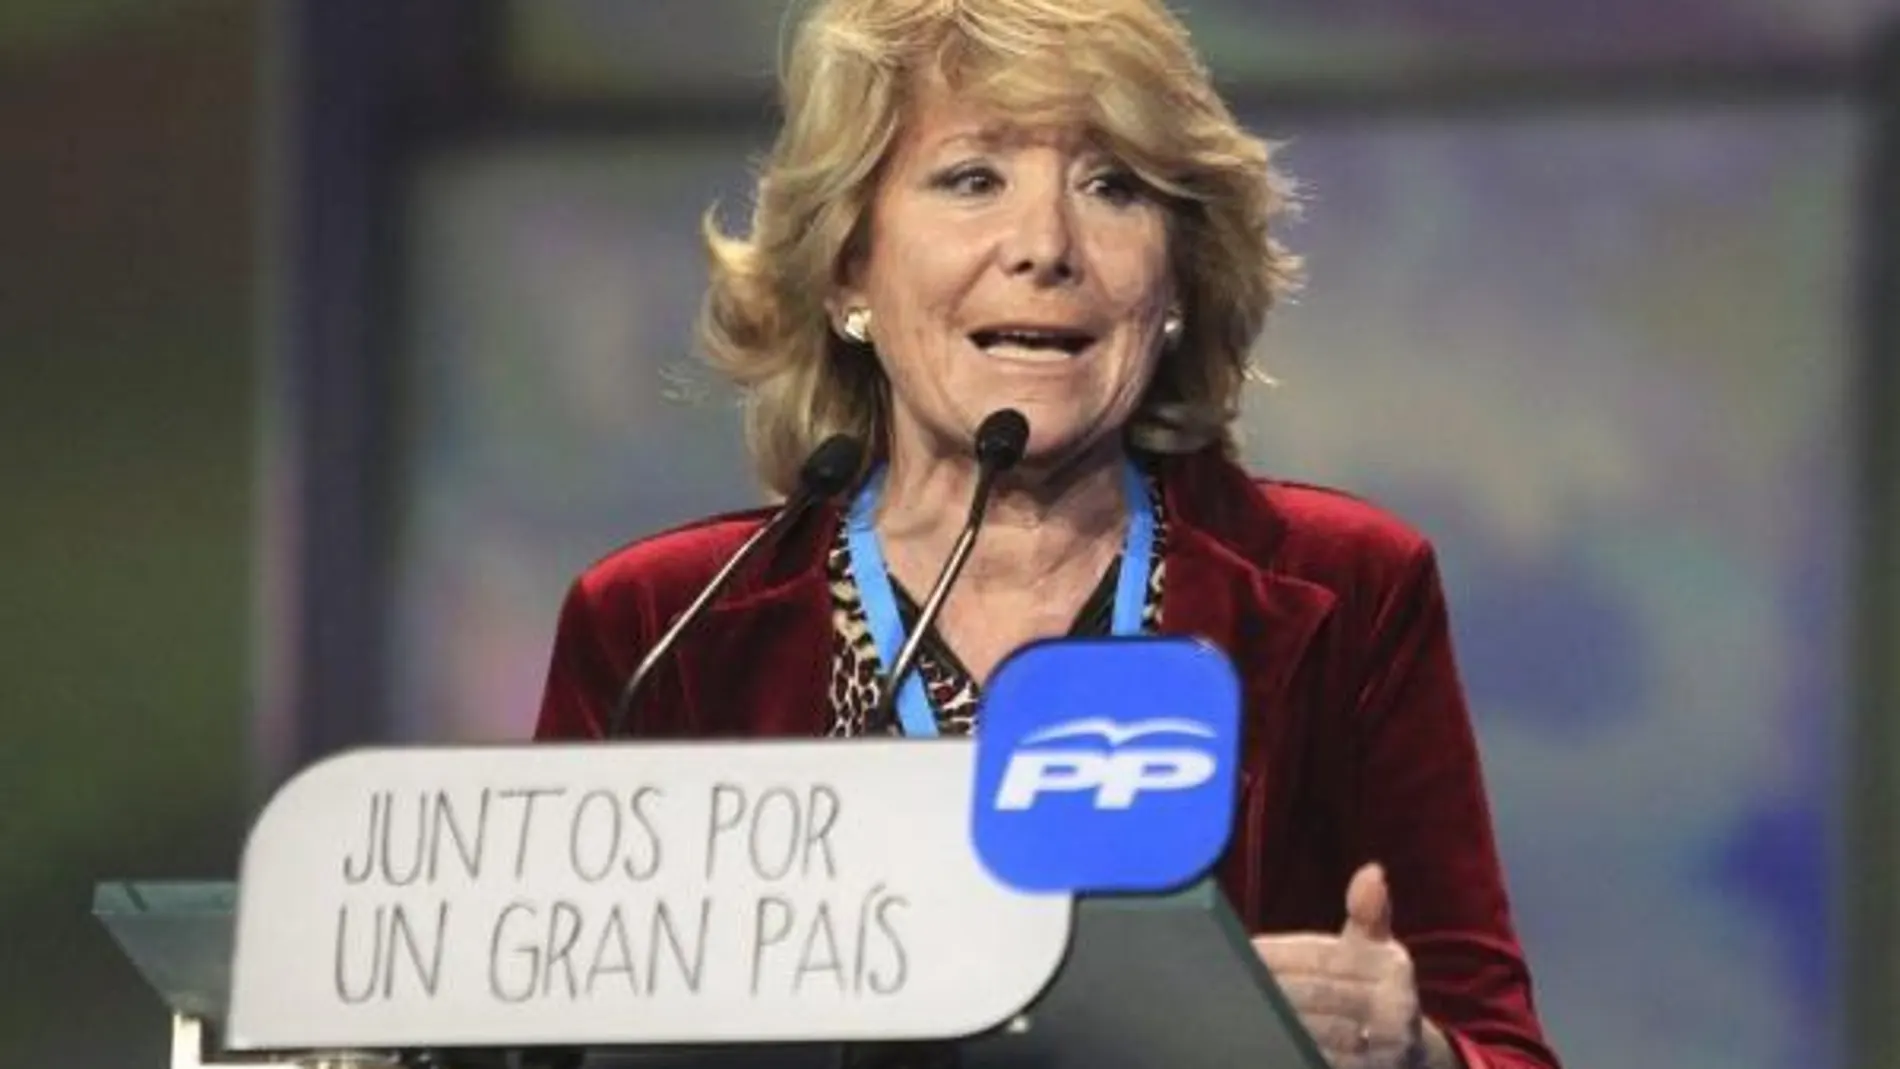 La presidenta del PP de Madrid, Esperanza Aguirre, interviene durante la convención nacional del Partido Popular